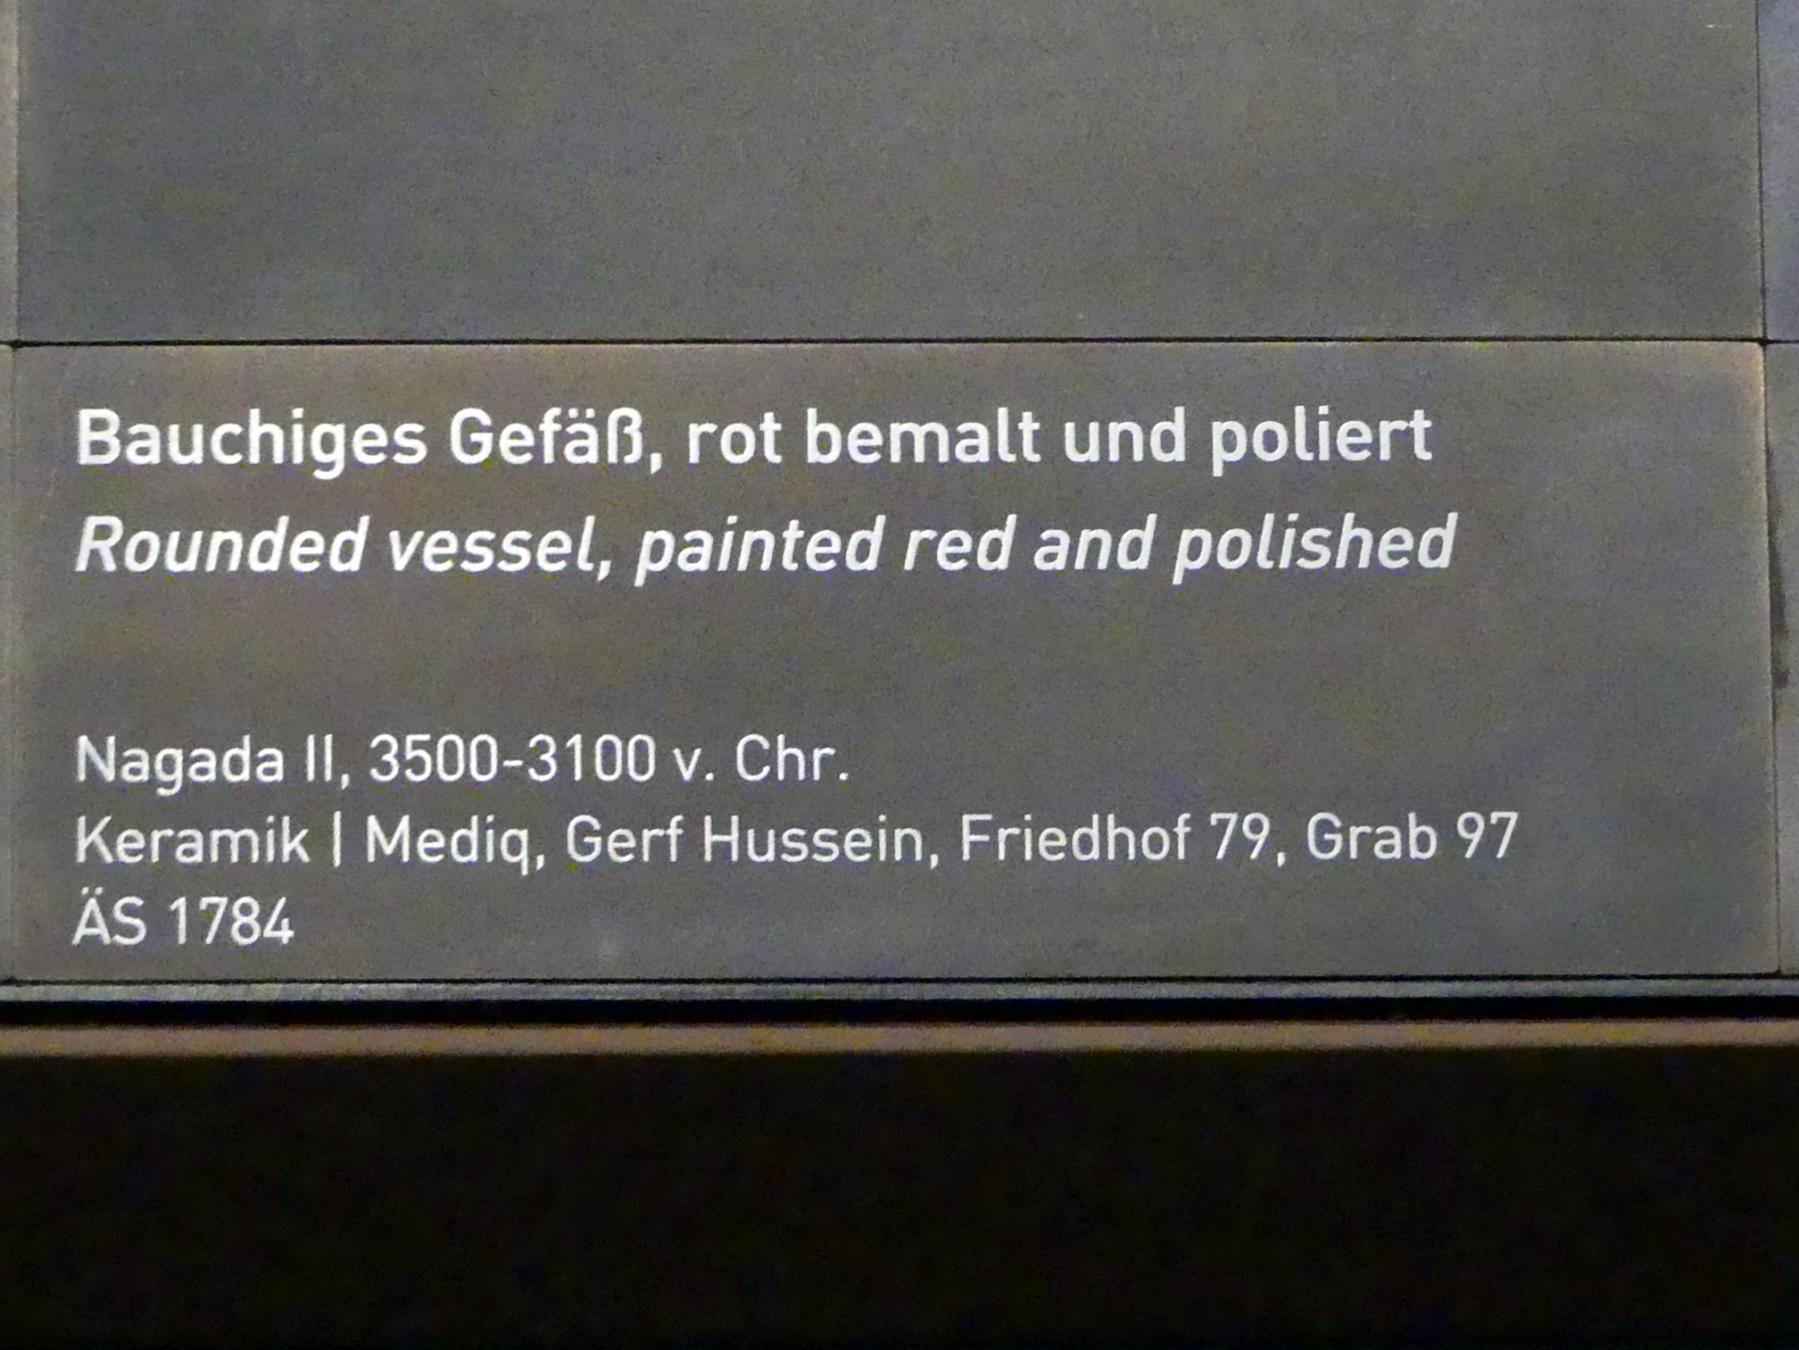 Bauchiges Gefäß, rot bemalt und poliert, Naqada II, 3700 - 3100 v. Chr., 3500 - 3100 v. Chr., Bild 2/2